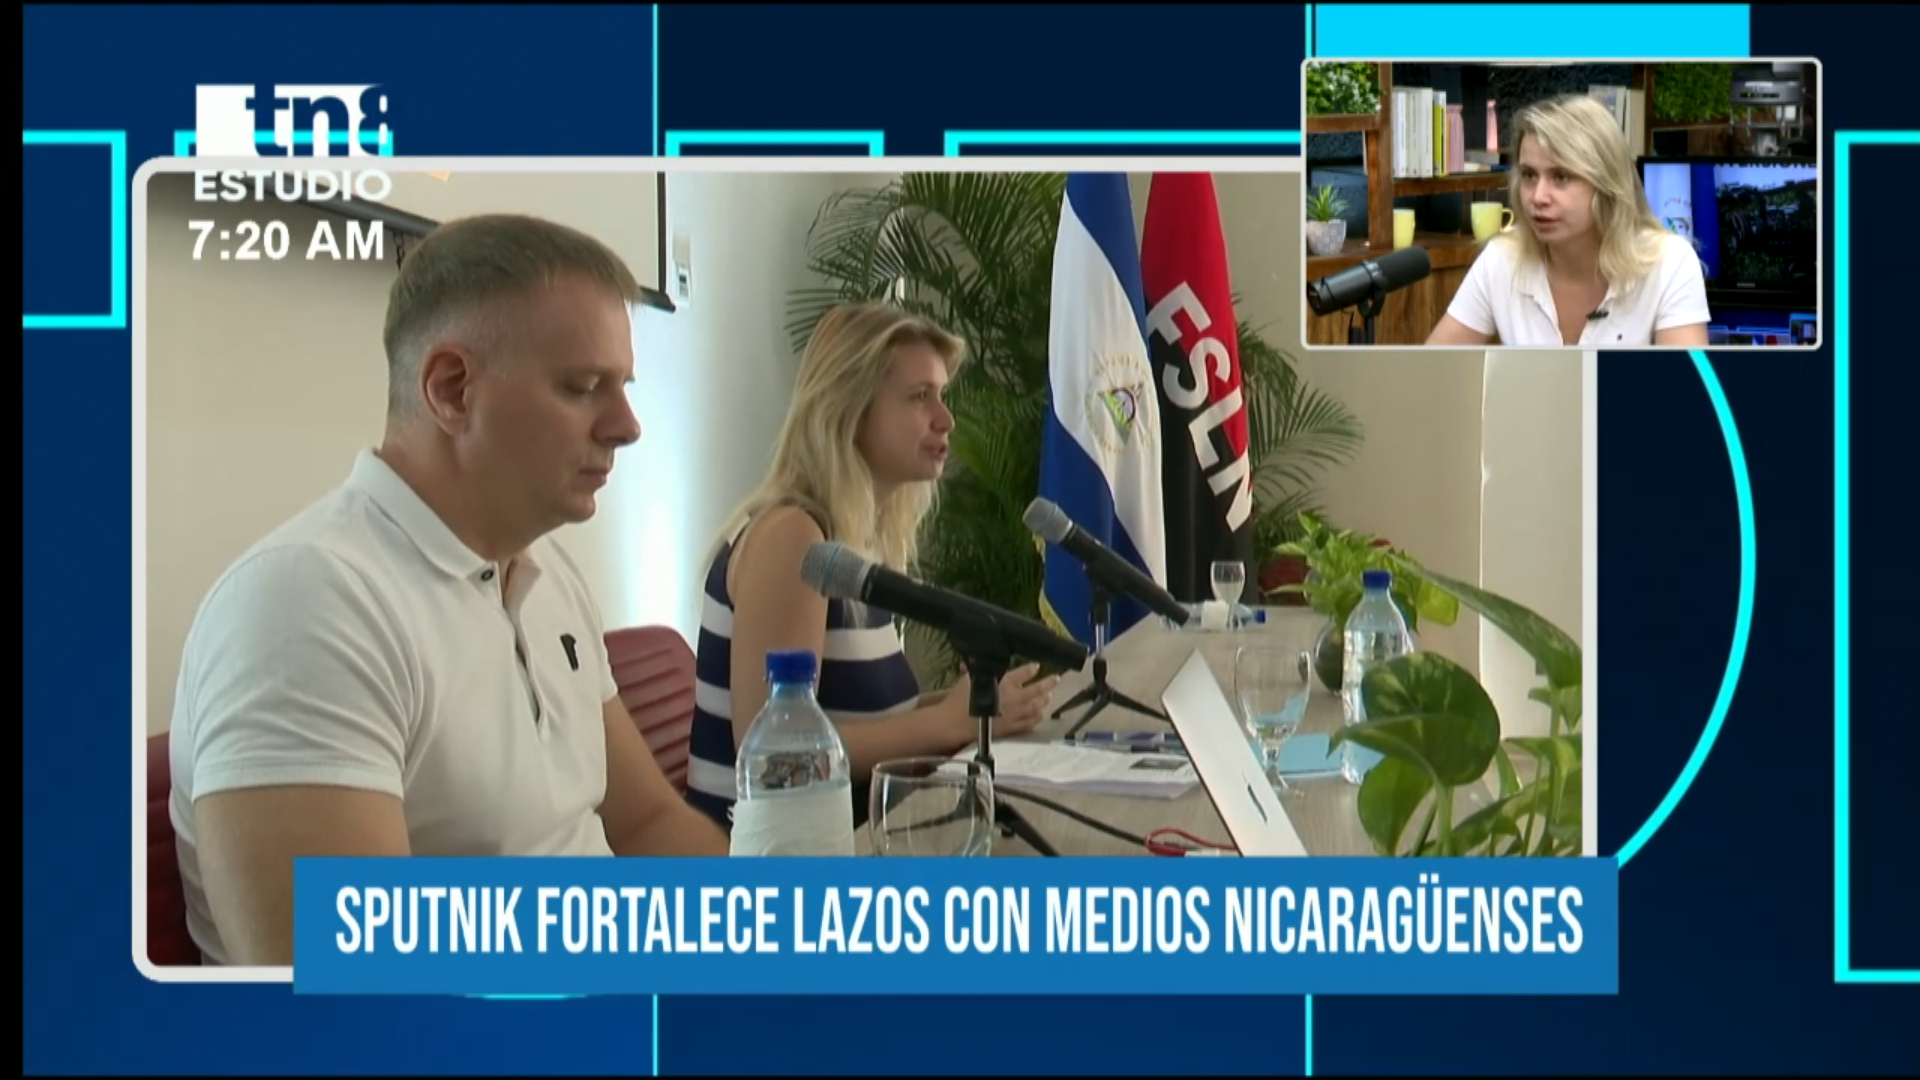 Cooperación entre los medios nicaragüenses y Sputnik